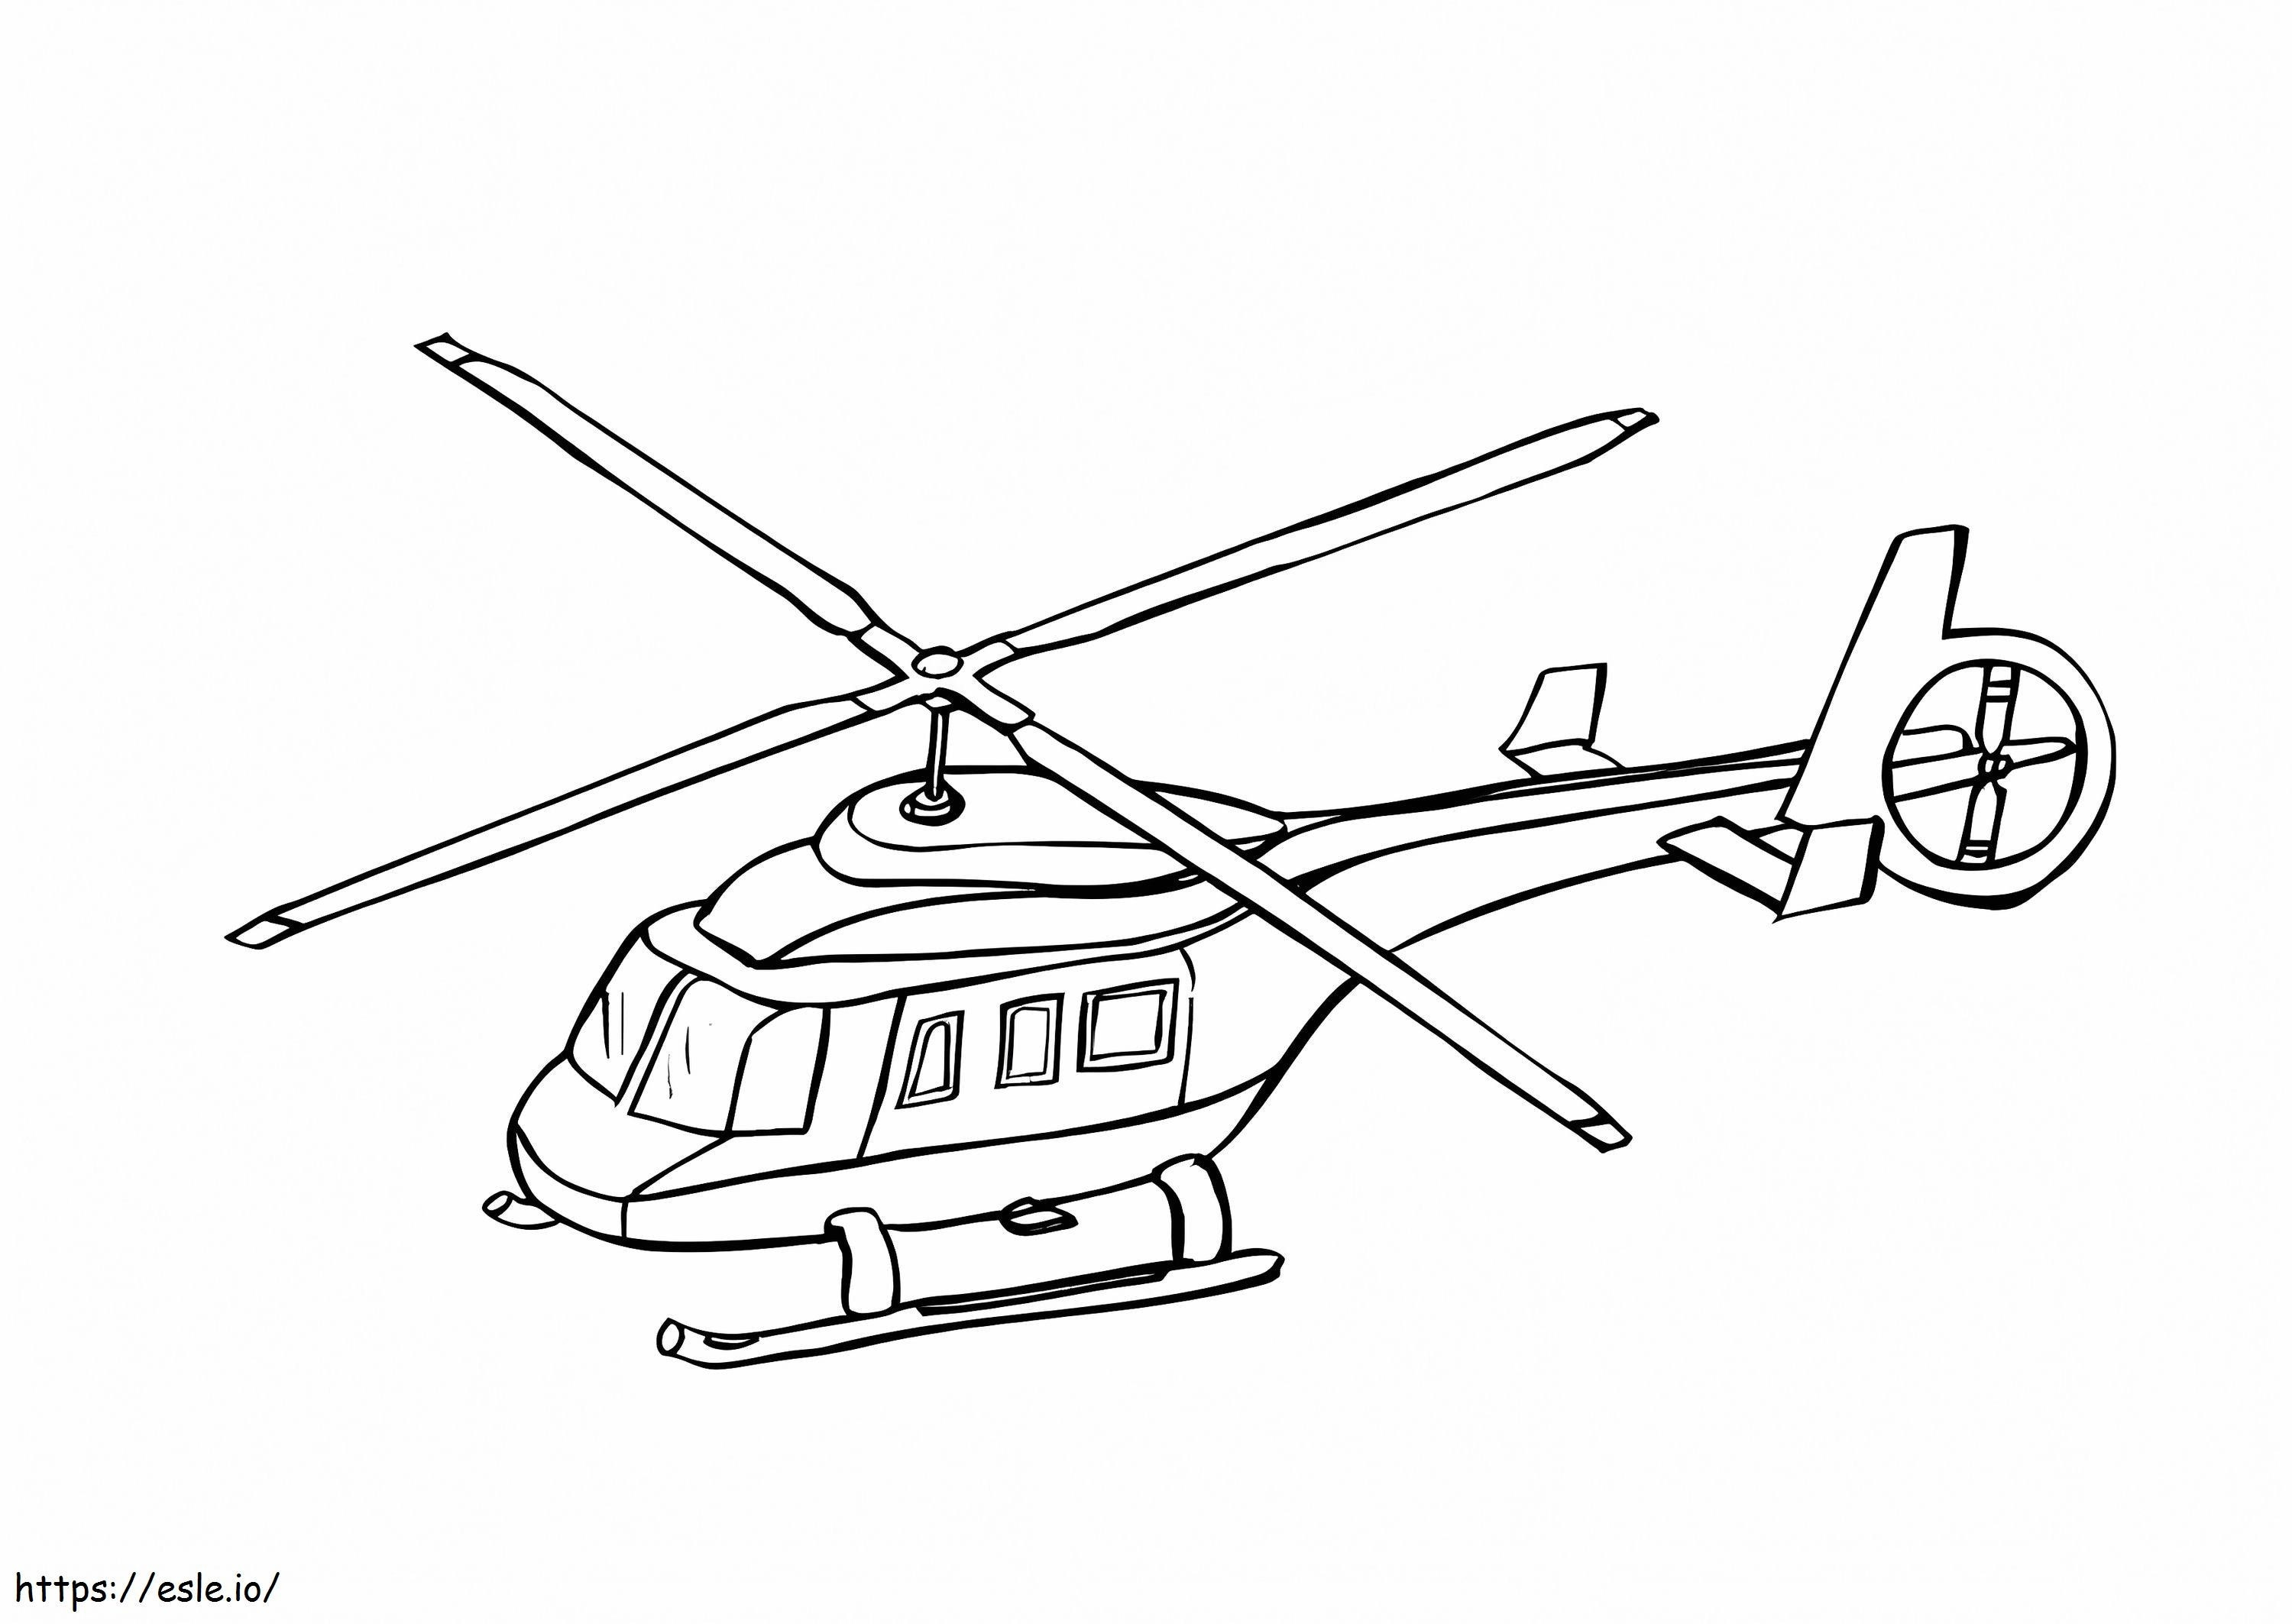 Hubschrauber 5 ausmalbilder